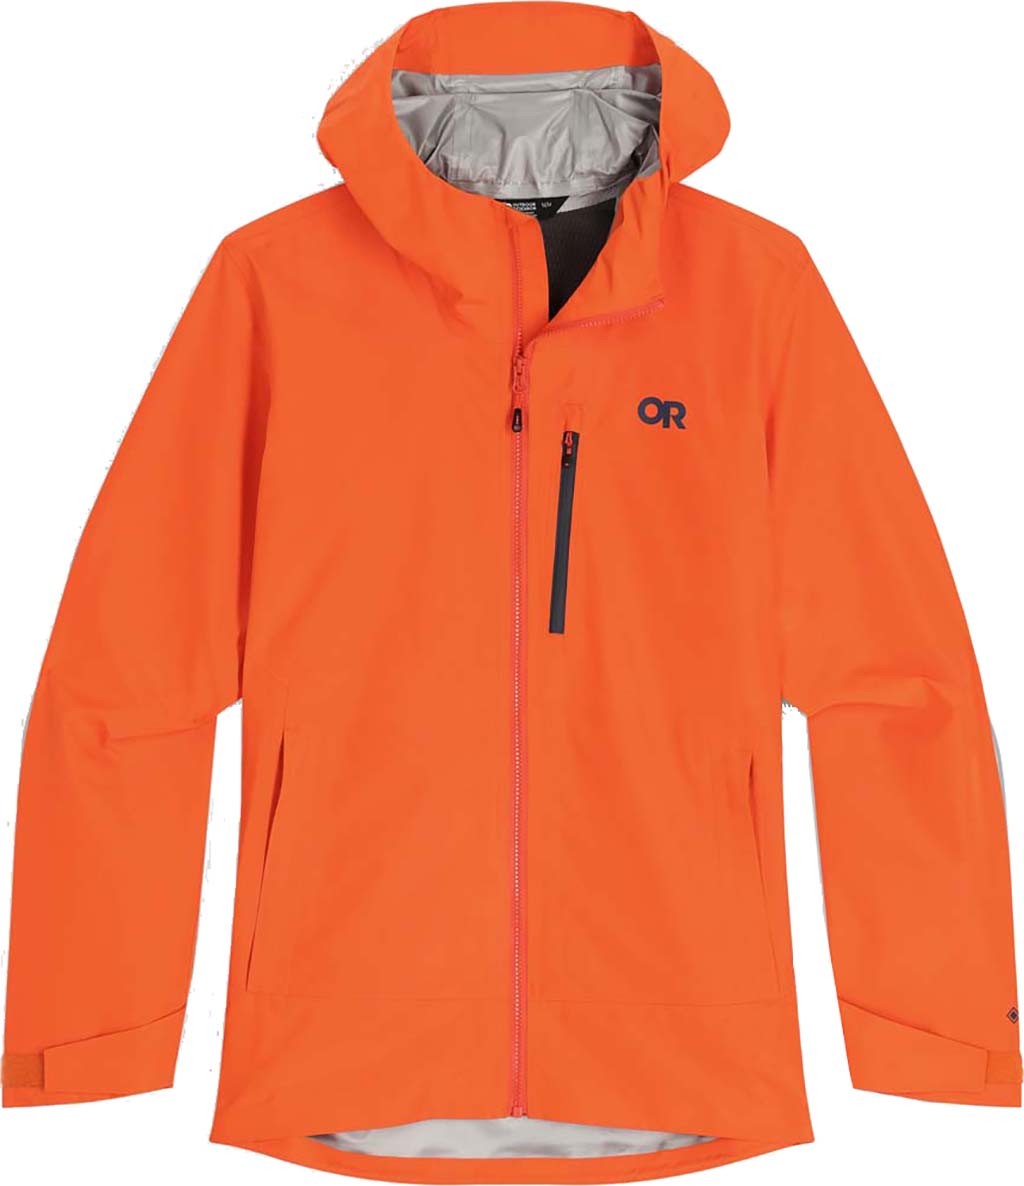  Outdoor Research Men's Foray II Jacket – Waterproof